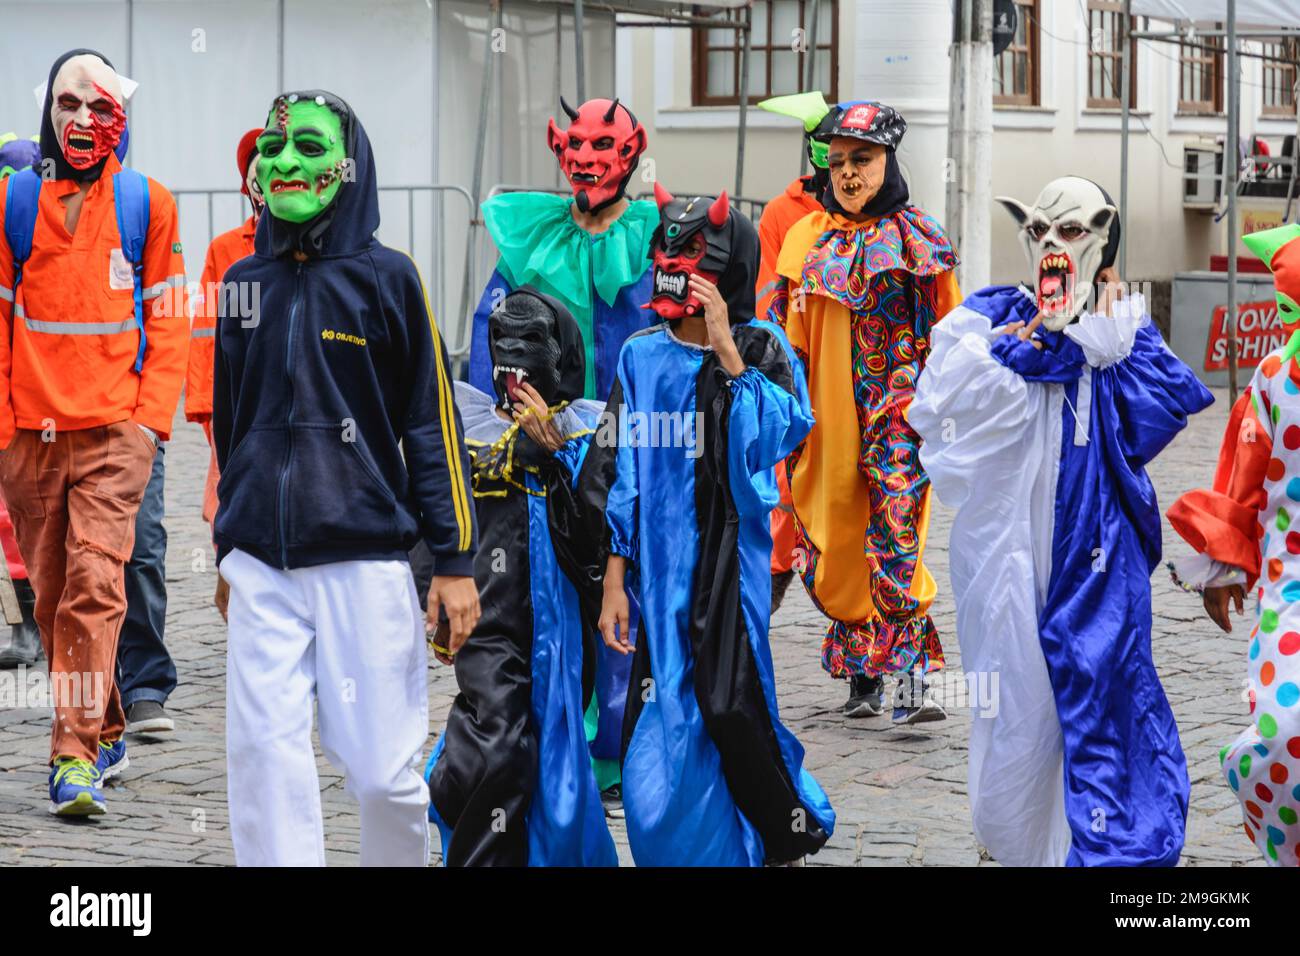 Maragogipe, Bahia, Brésil - 27 février 2017: Groupe de personnes vêtues de costumes d'horreur au carnaval de Maragojipe, Bahia. Banque D'Images